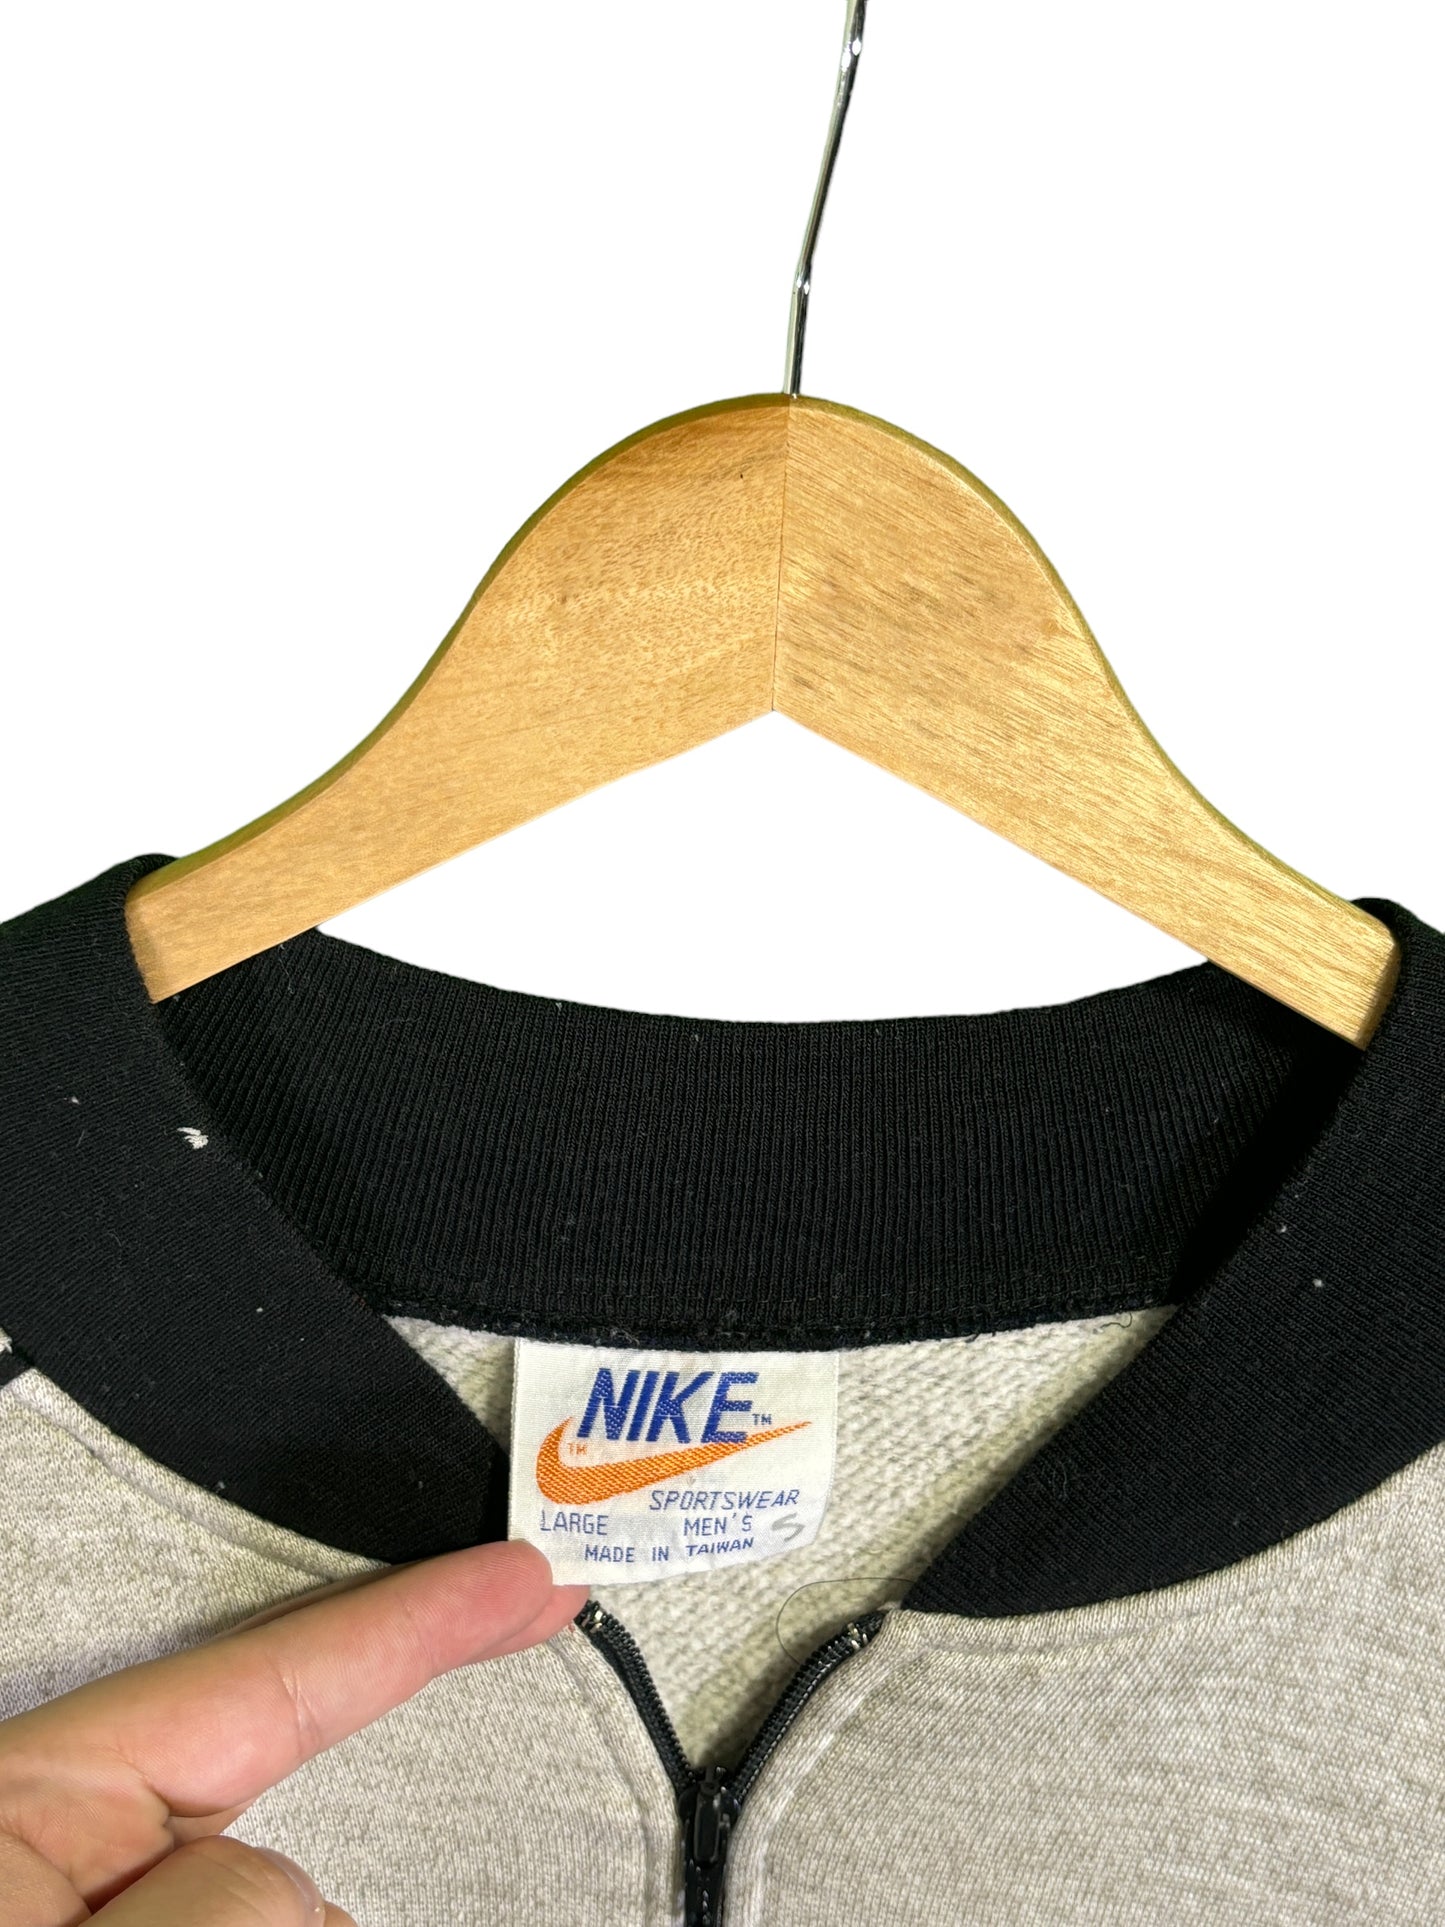 Vintage 80's Nike Grey Full Zip Bomber Style Jacket Size Large